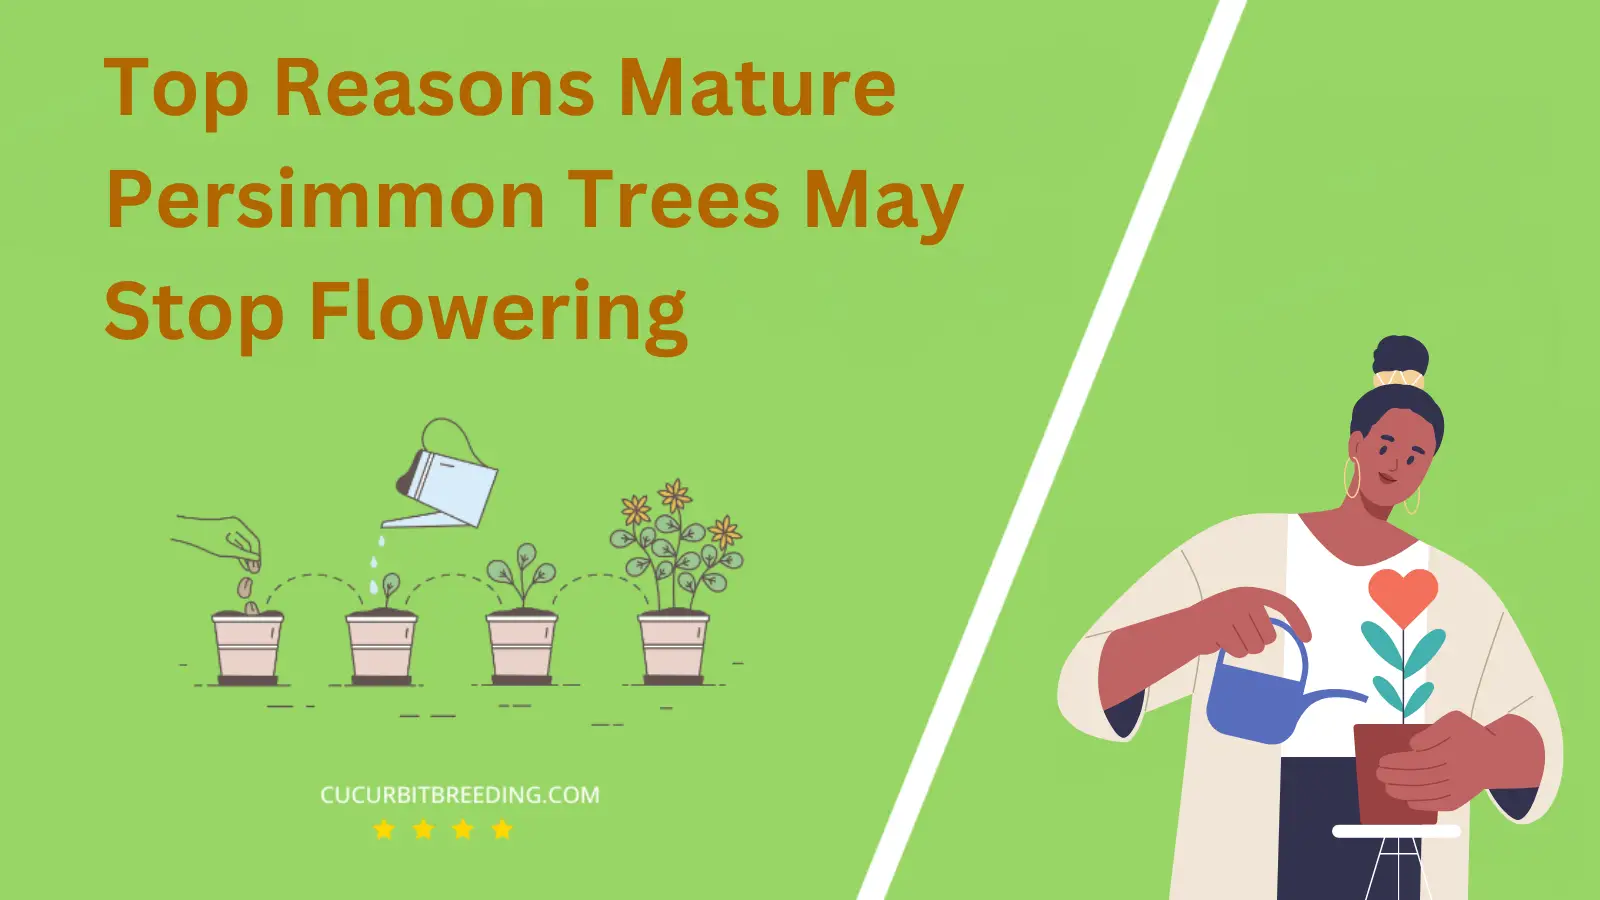 Top Reasons Mature Persimmon Trees May Stop Flowering